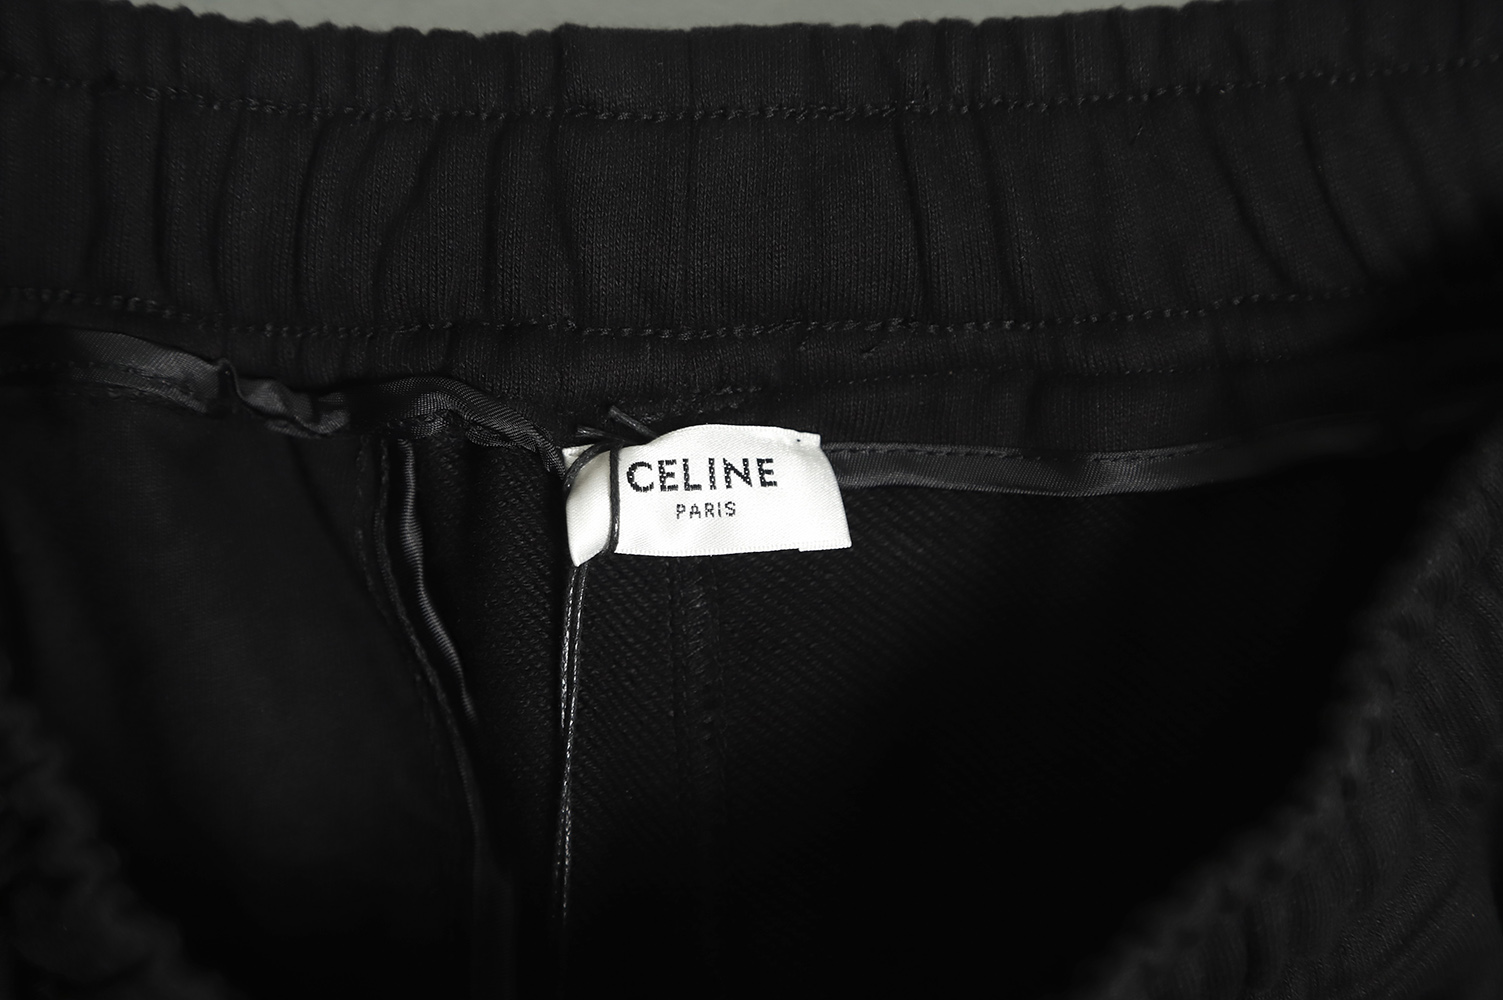 Celine 22FW webbing letter logo sports casual pants